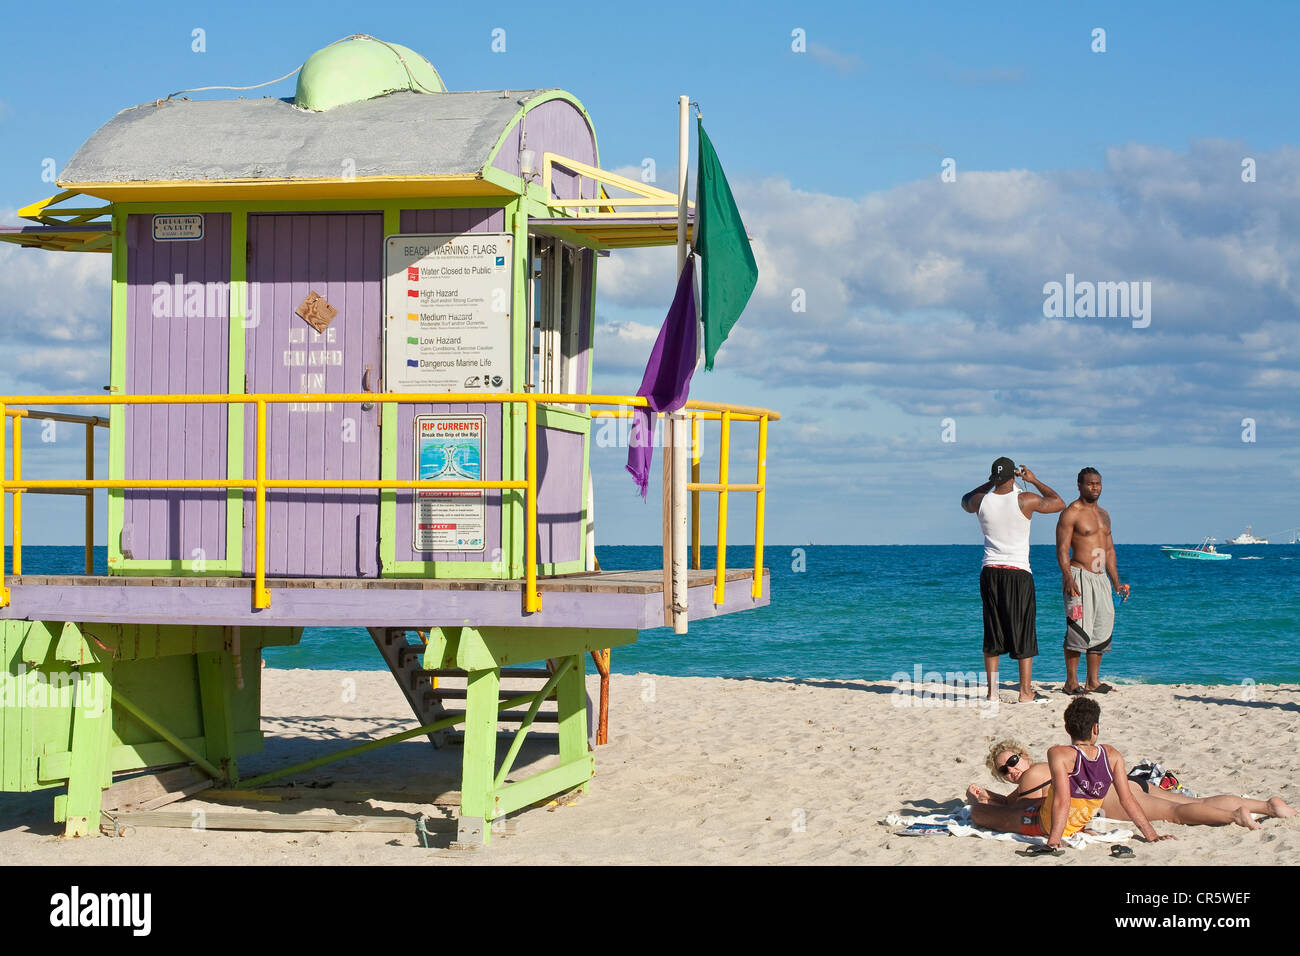 United States, Florida, Miami Beach, South Beach, sur la plage cabine lifesaver Banque D'Images